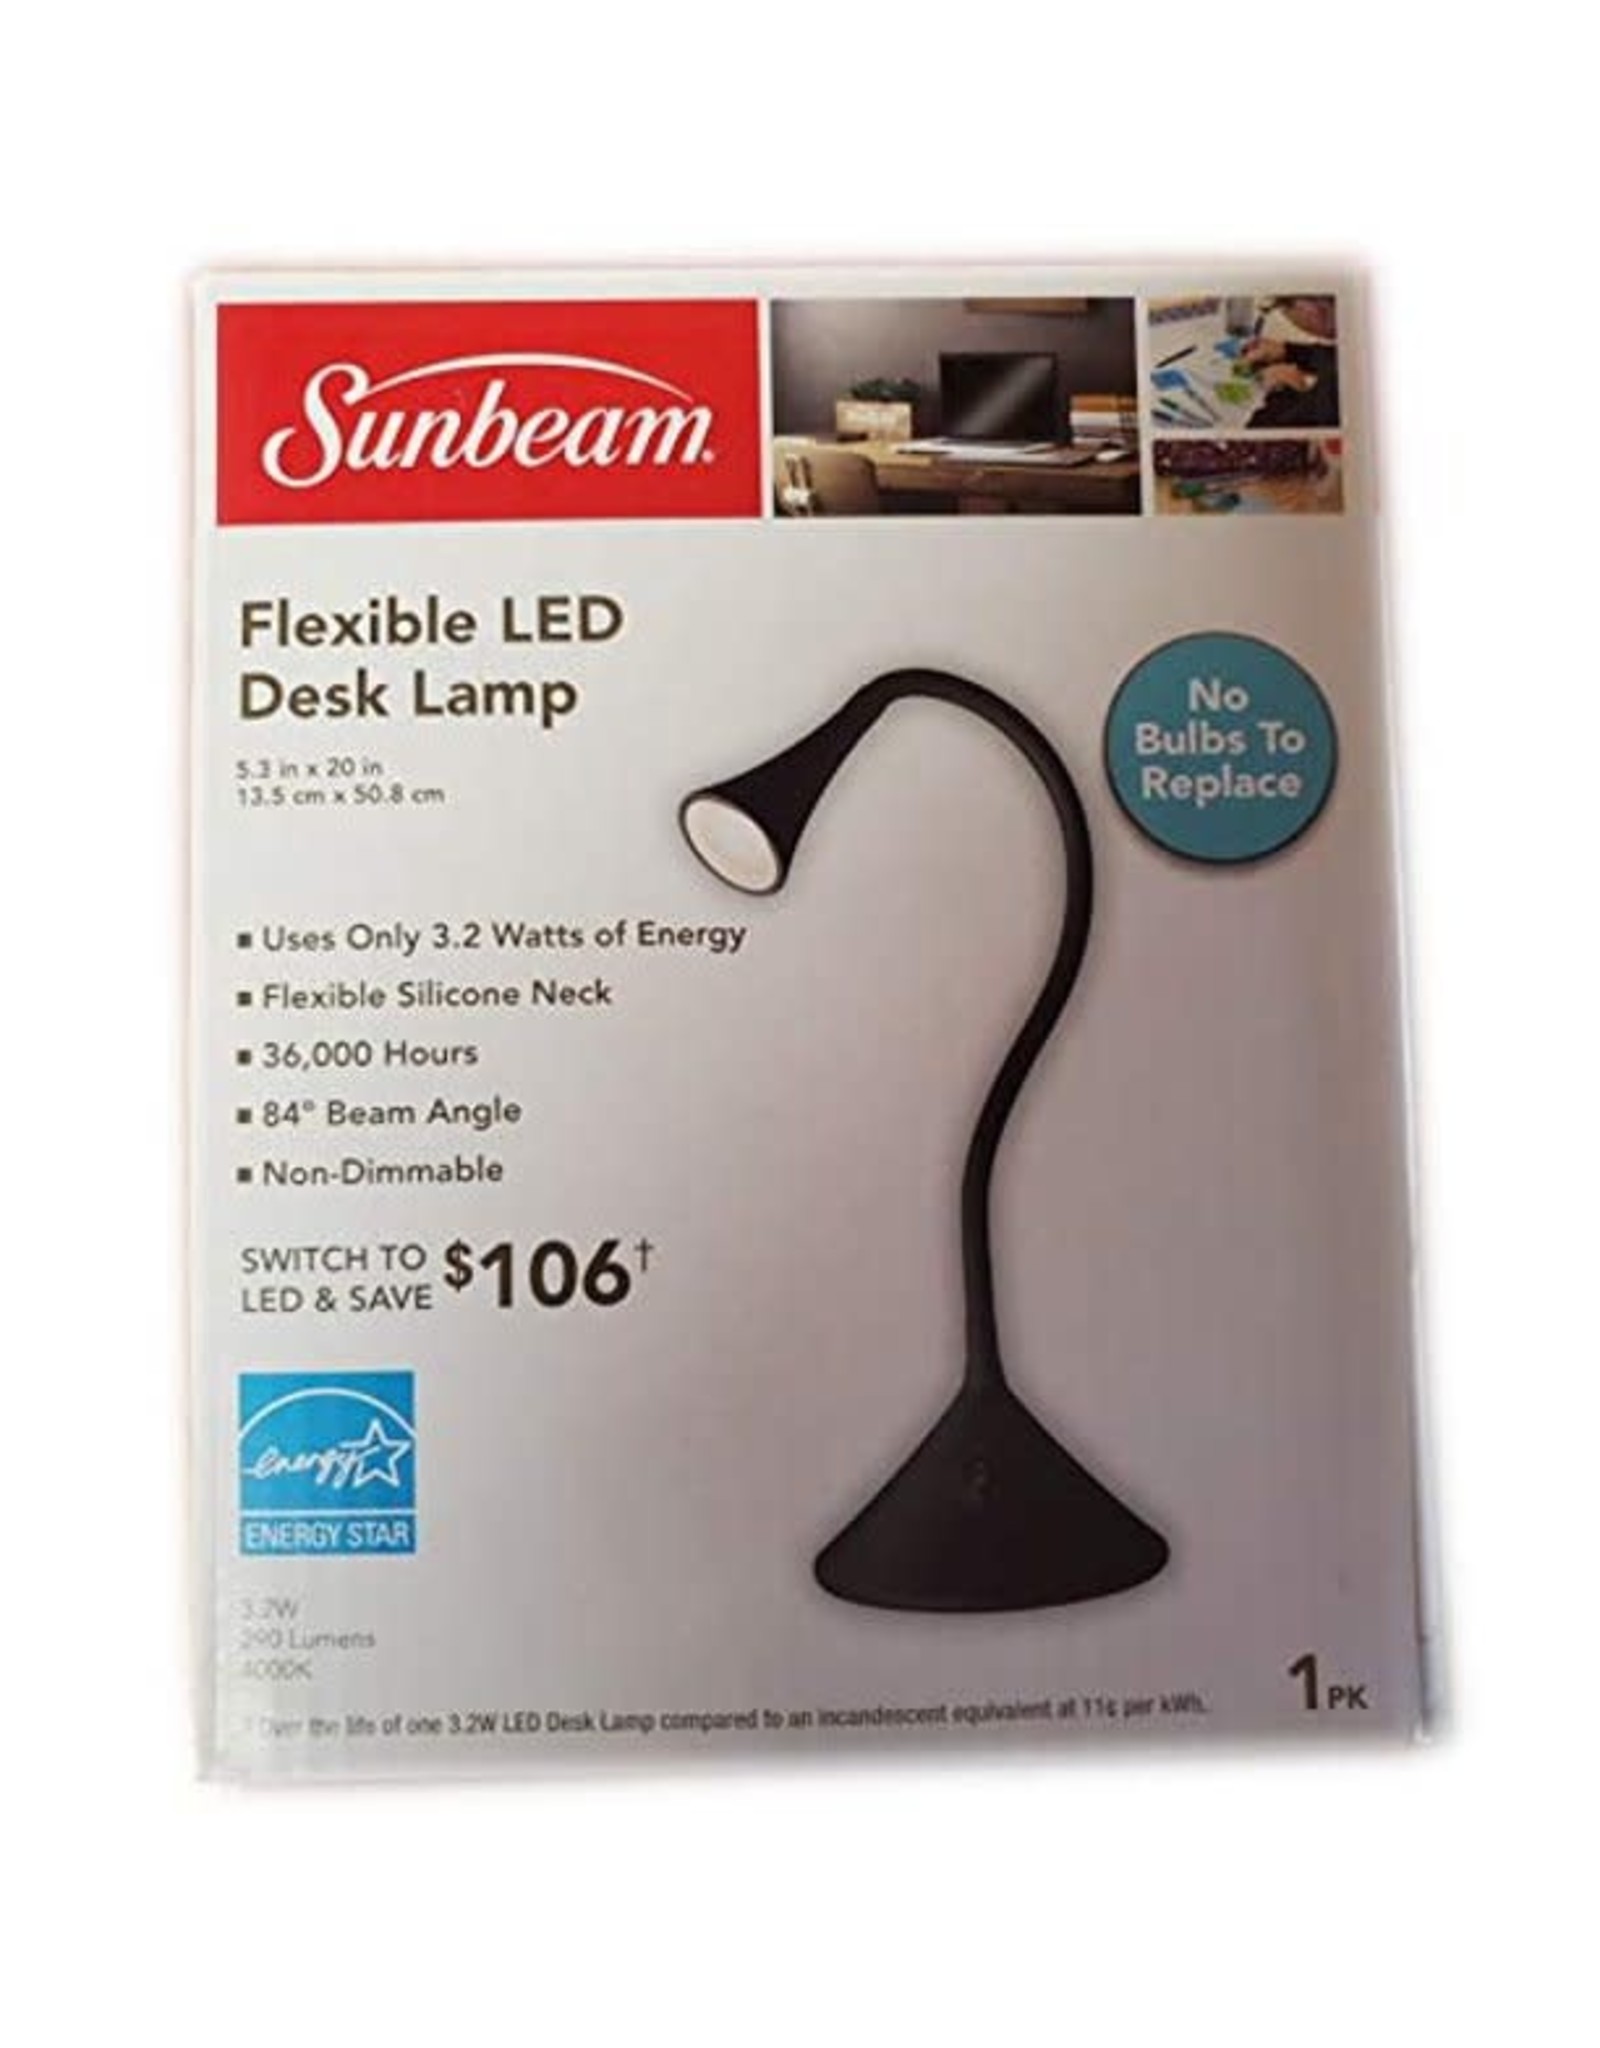 Sunbeam Sunbeam Flexible LED Desk Lamp